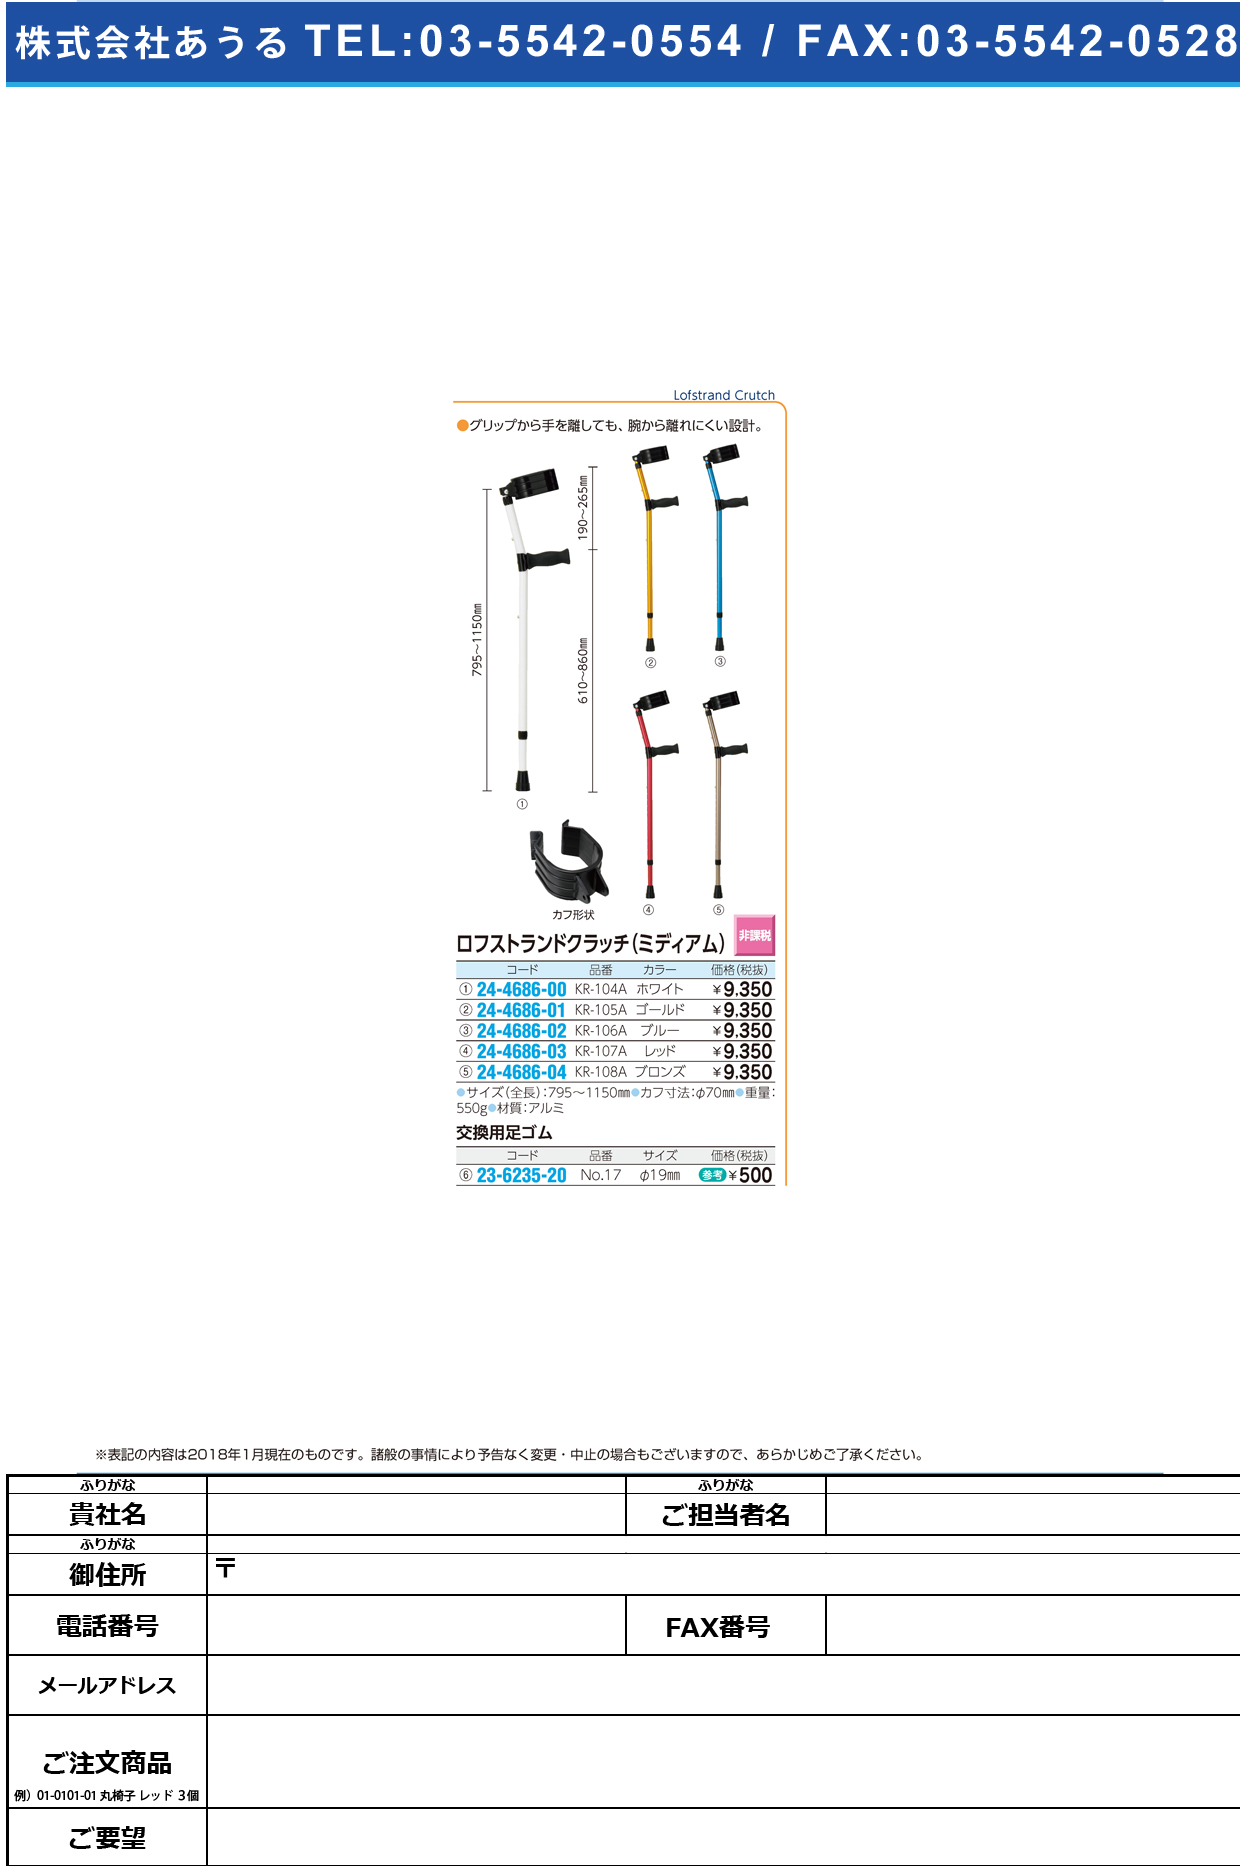 (24-4686-04)ロフストランドクラッチ（ミディアム） KR-108A(ﾌﾞﾛﾝｽﾞ) ﾛﾌｽﾄﾗﾝﾄﾞｸﾗｯﾁ【1本単位】【2018年カタログ商品】